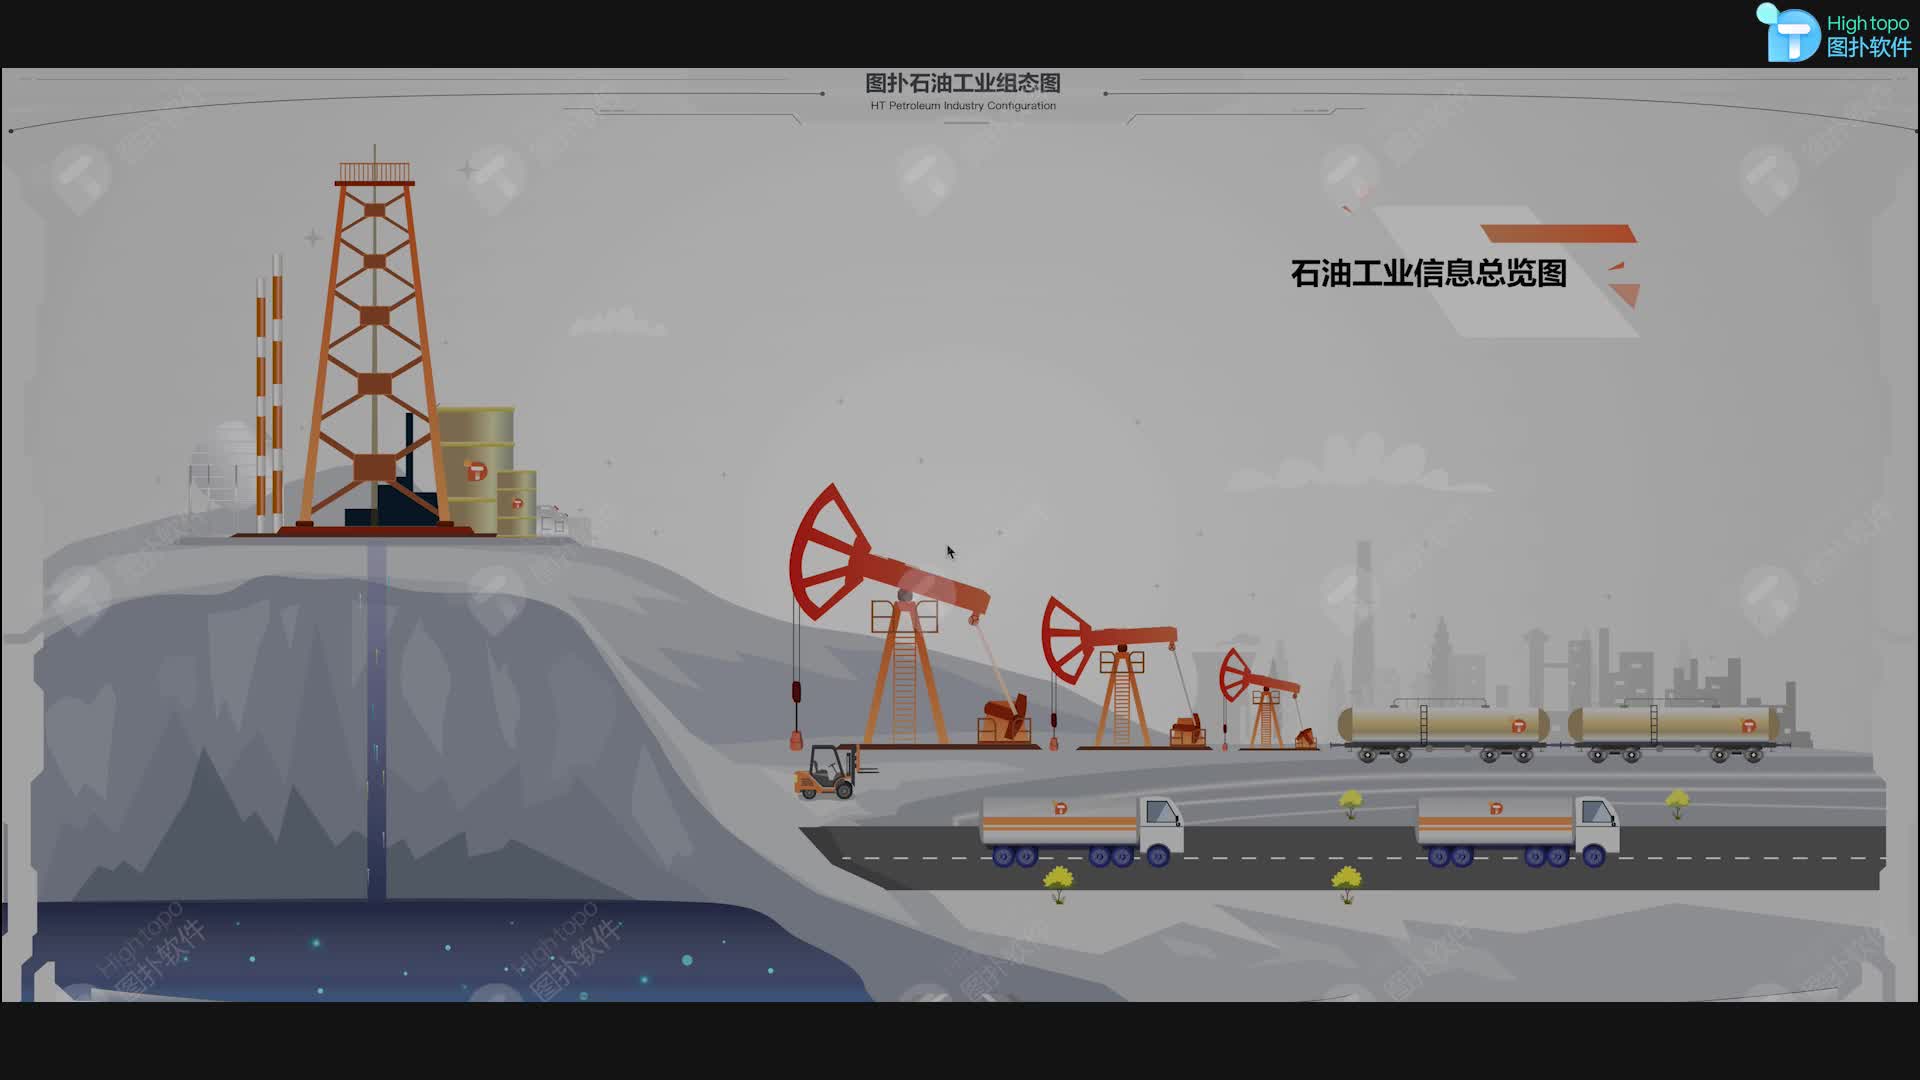 石油儲運生產 2D 可視化，HMI 組態軟件監控 #石油 #組態監控 #HMI
 